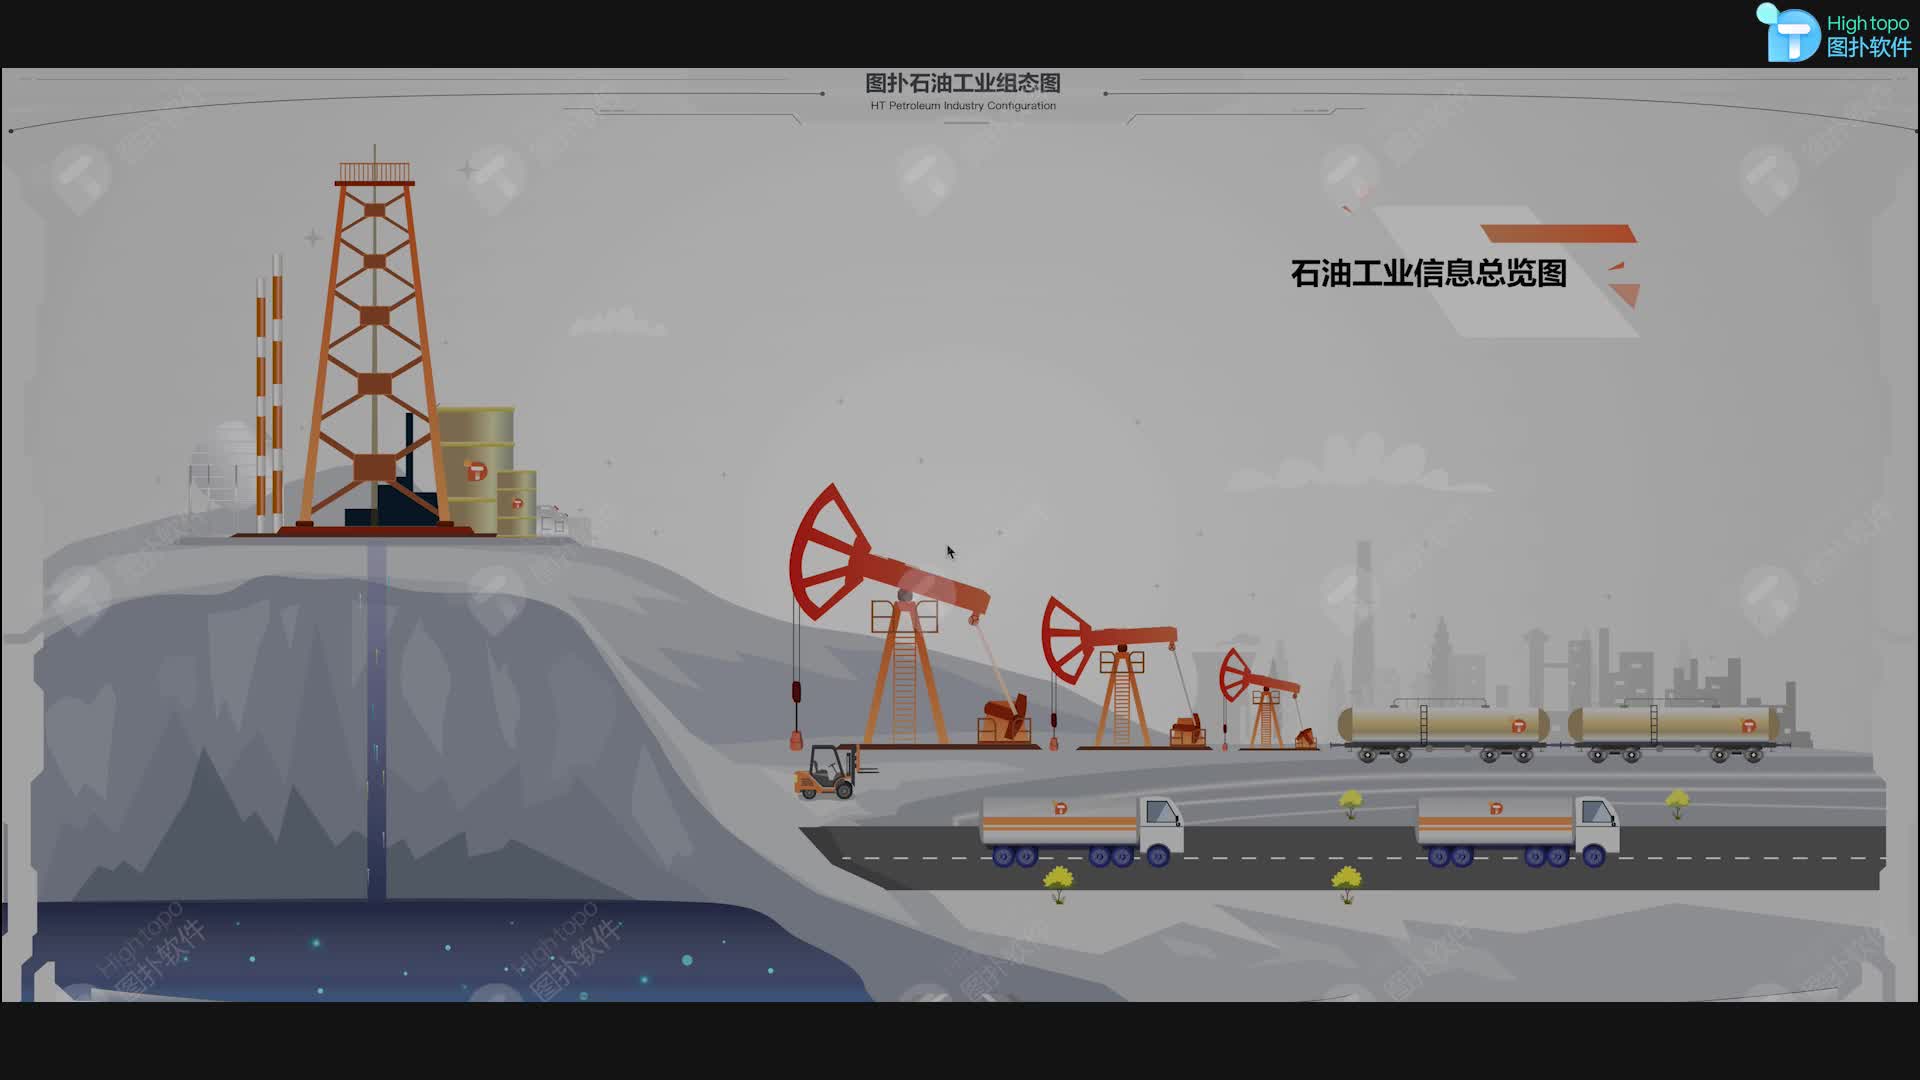 石油儲運生產 2D 可視化，HMI 組態軟件監控 #石油 #組態監控 #HMI
 